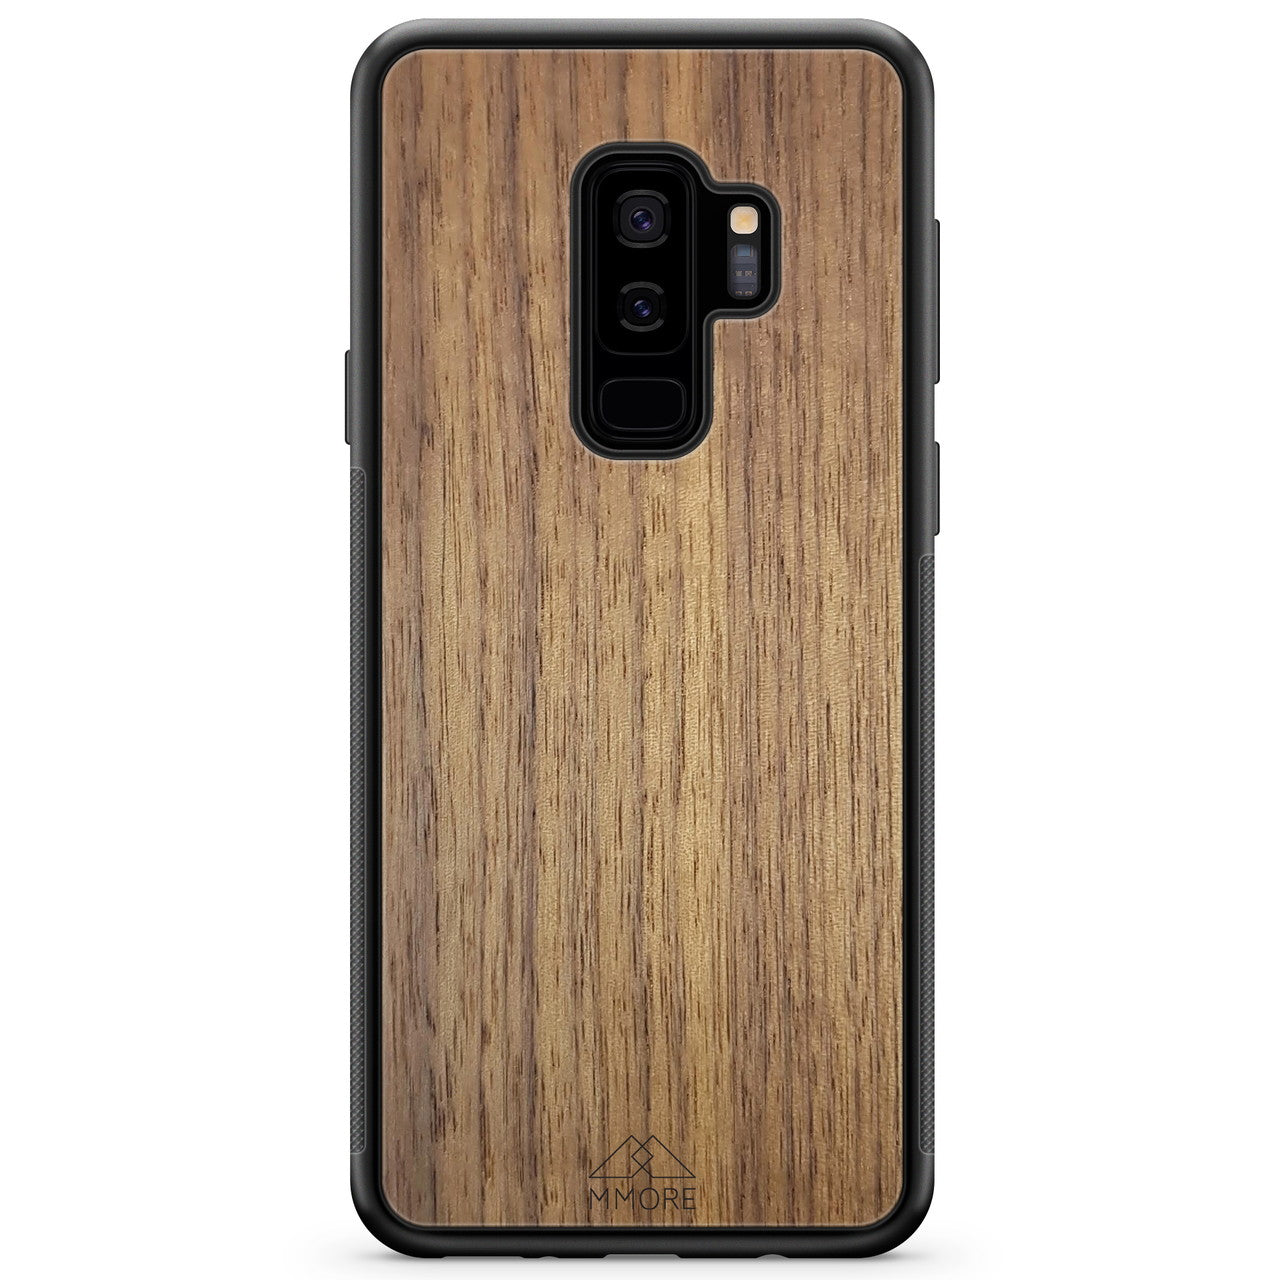 Funda de madera para teléfono Samsung S9 Plus de nogal americano